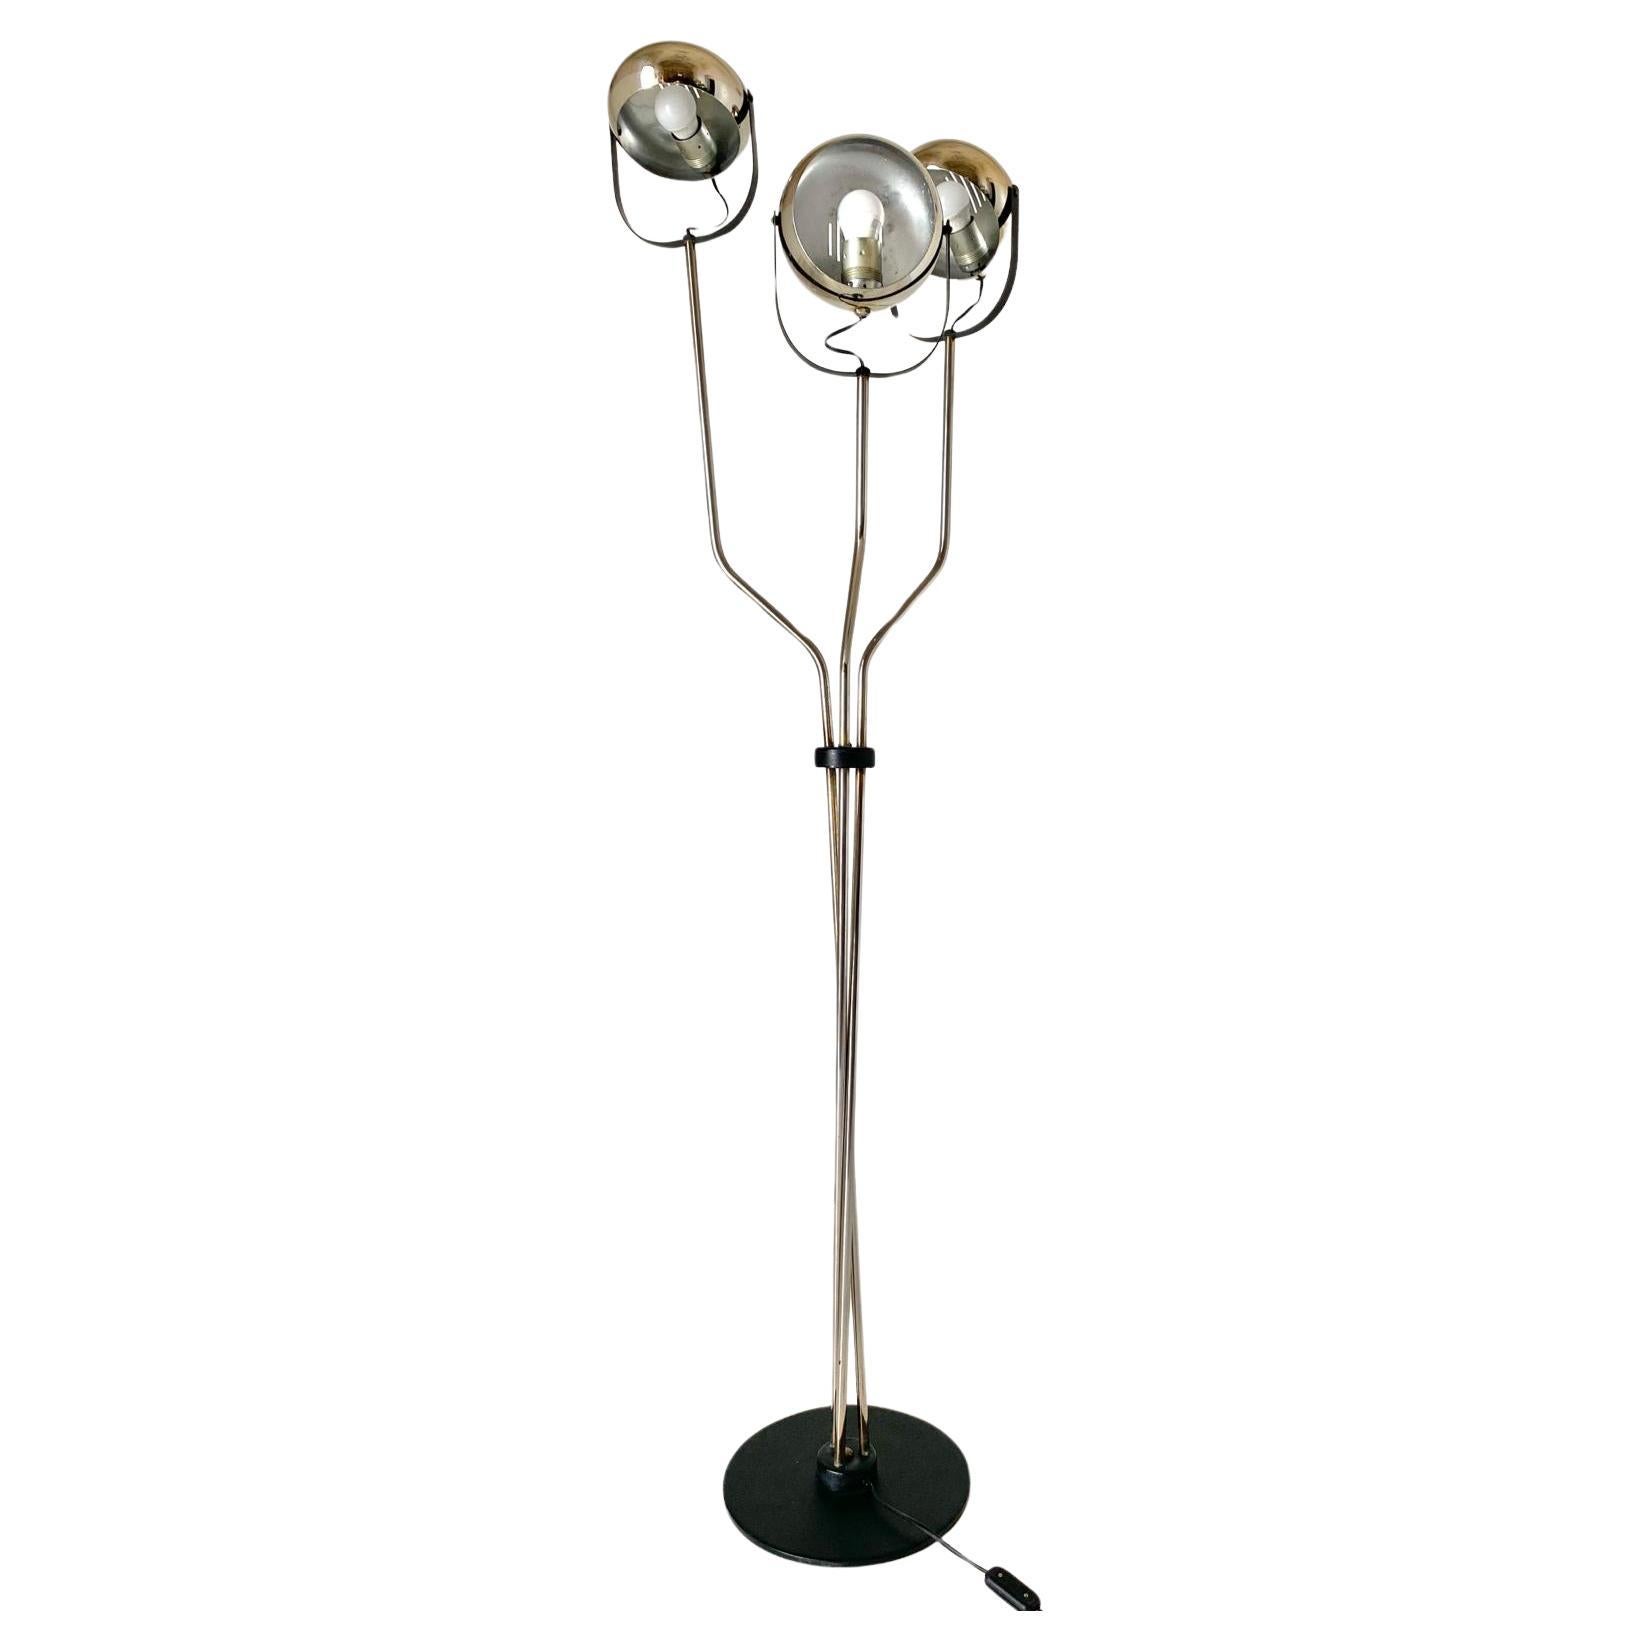 Italian Vintage chromed floor lamp with three adjustable lights spots, Reggiani 1960s For Sale